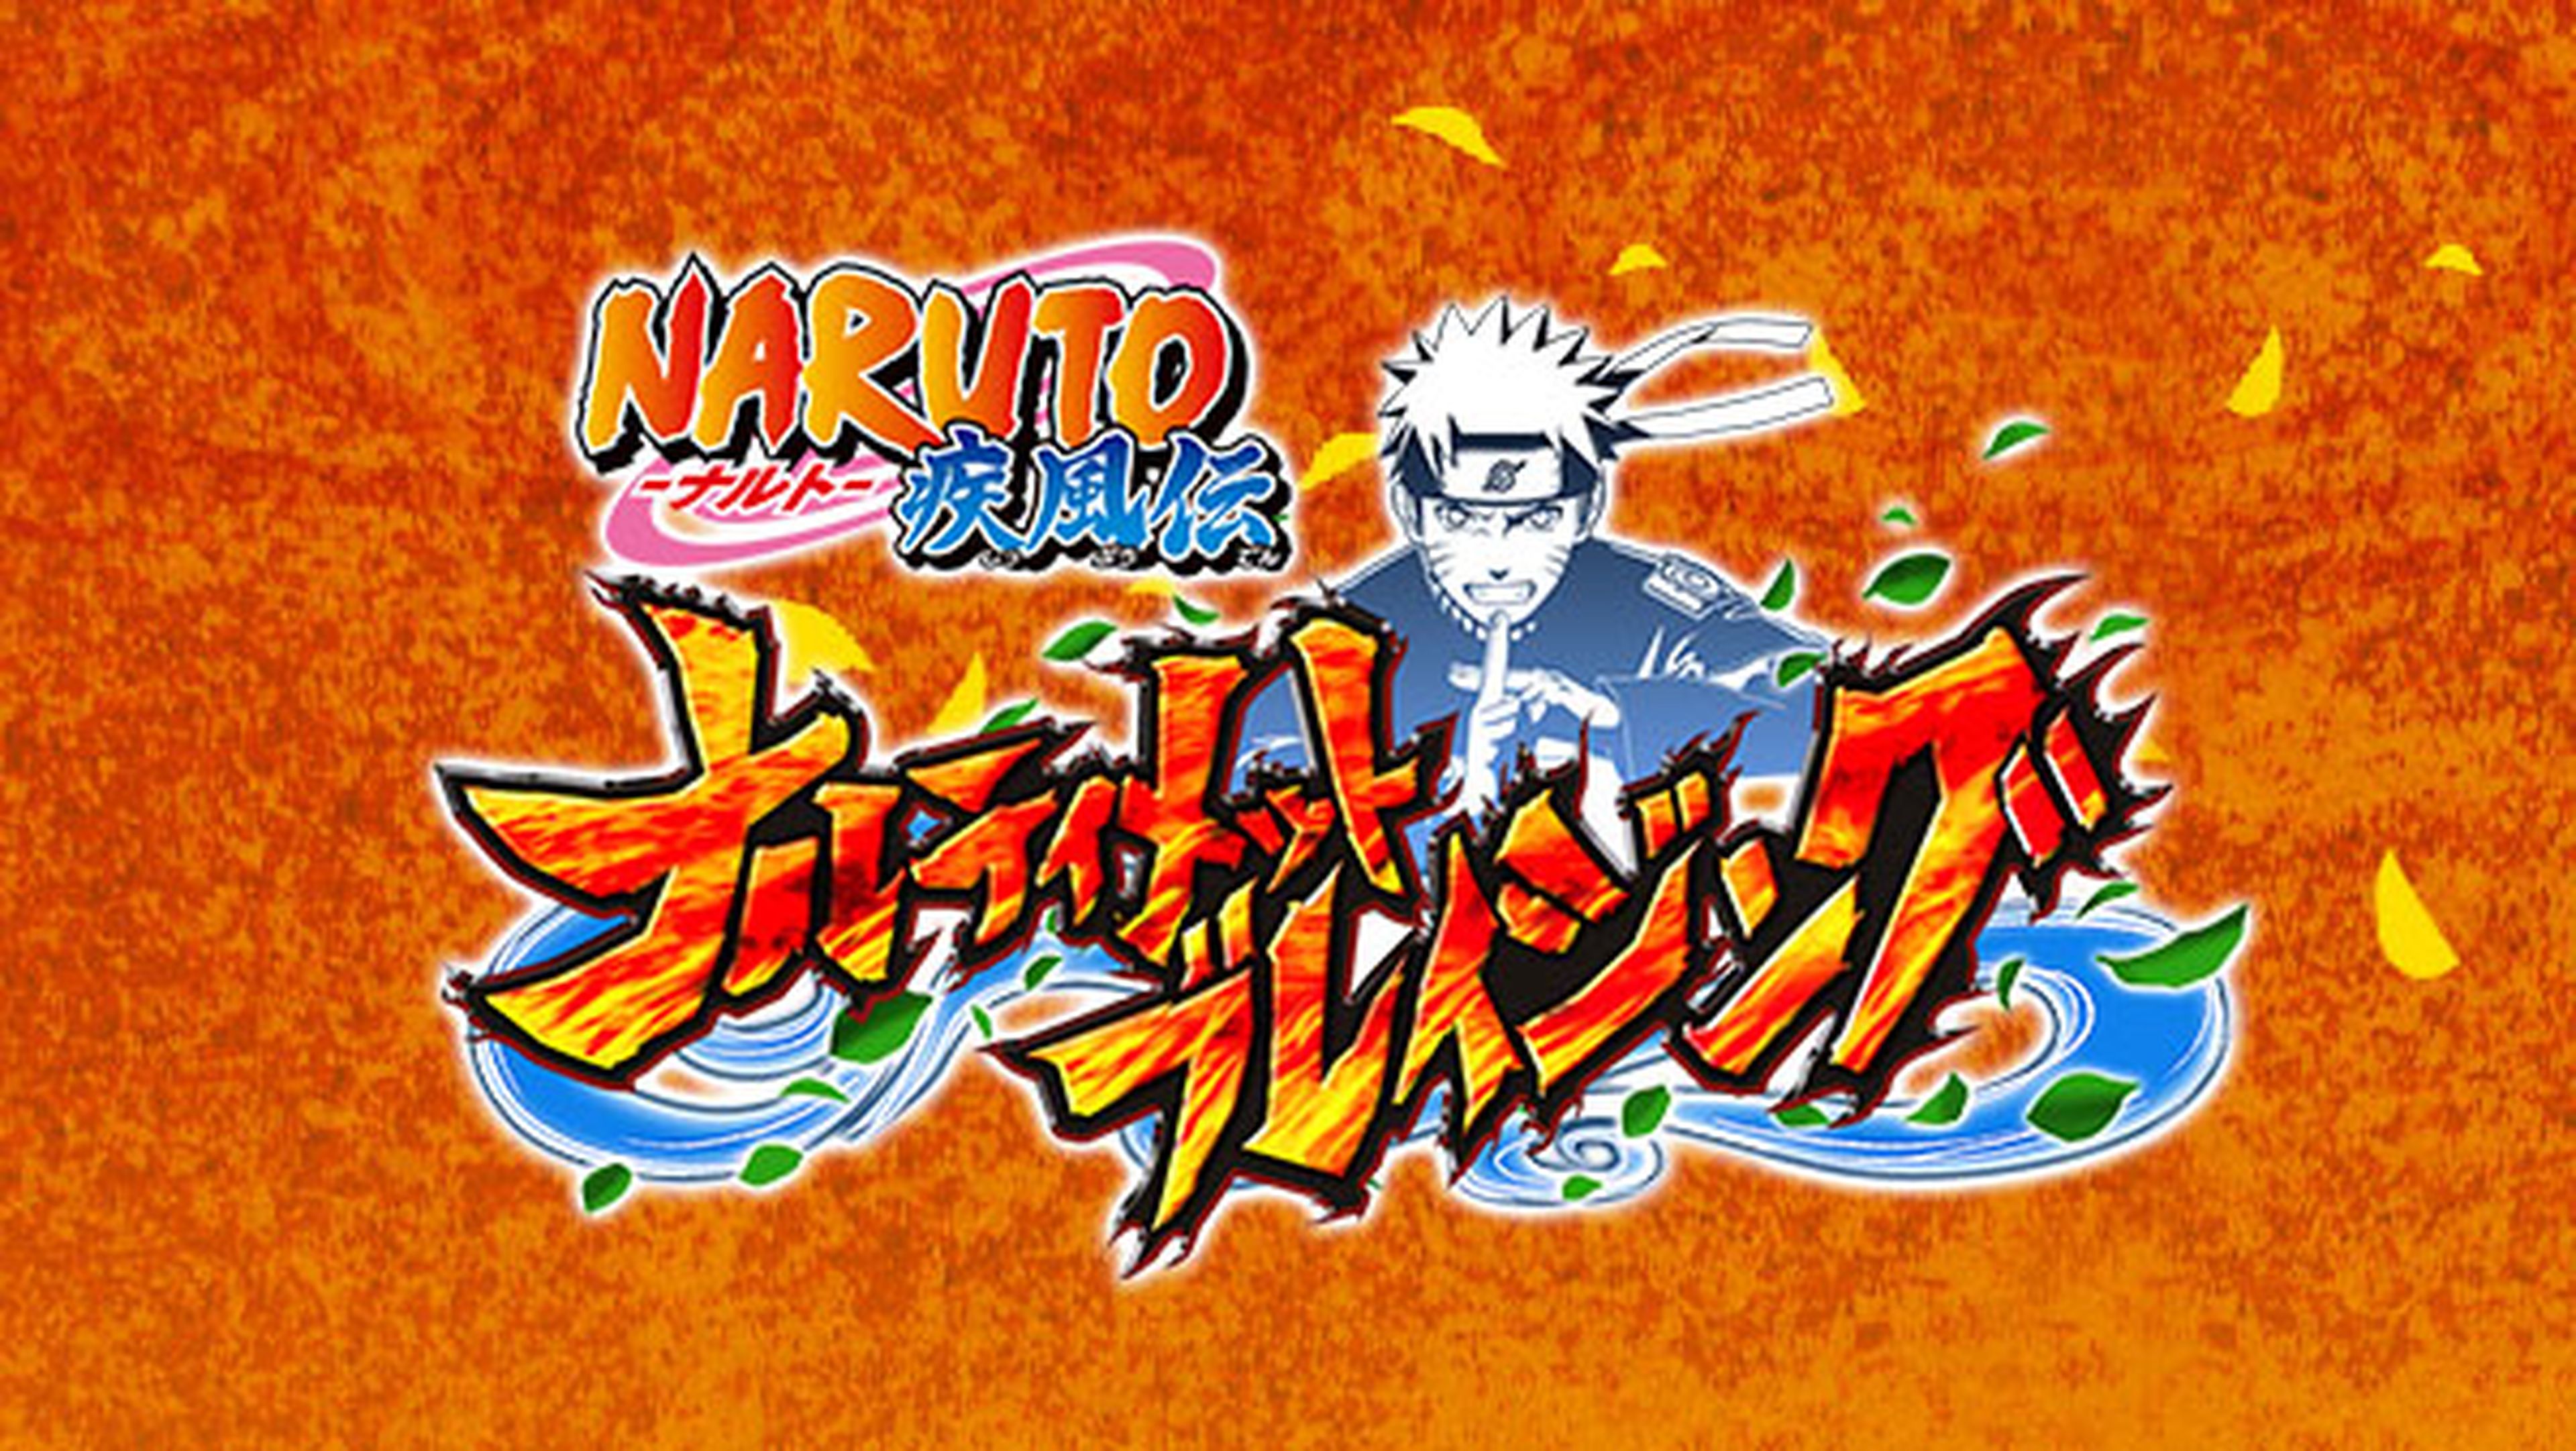 Naruto Shippuden Ultimate Ninja Blazing para Android e iOS anunciado